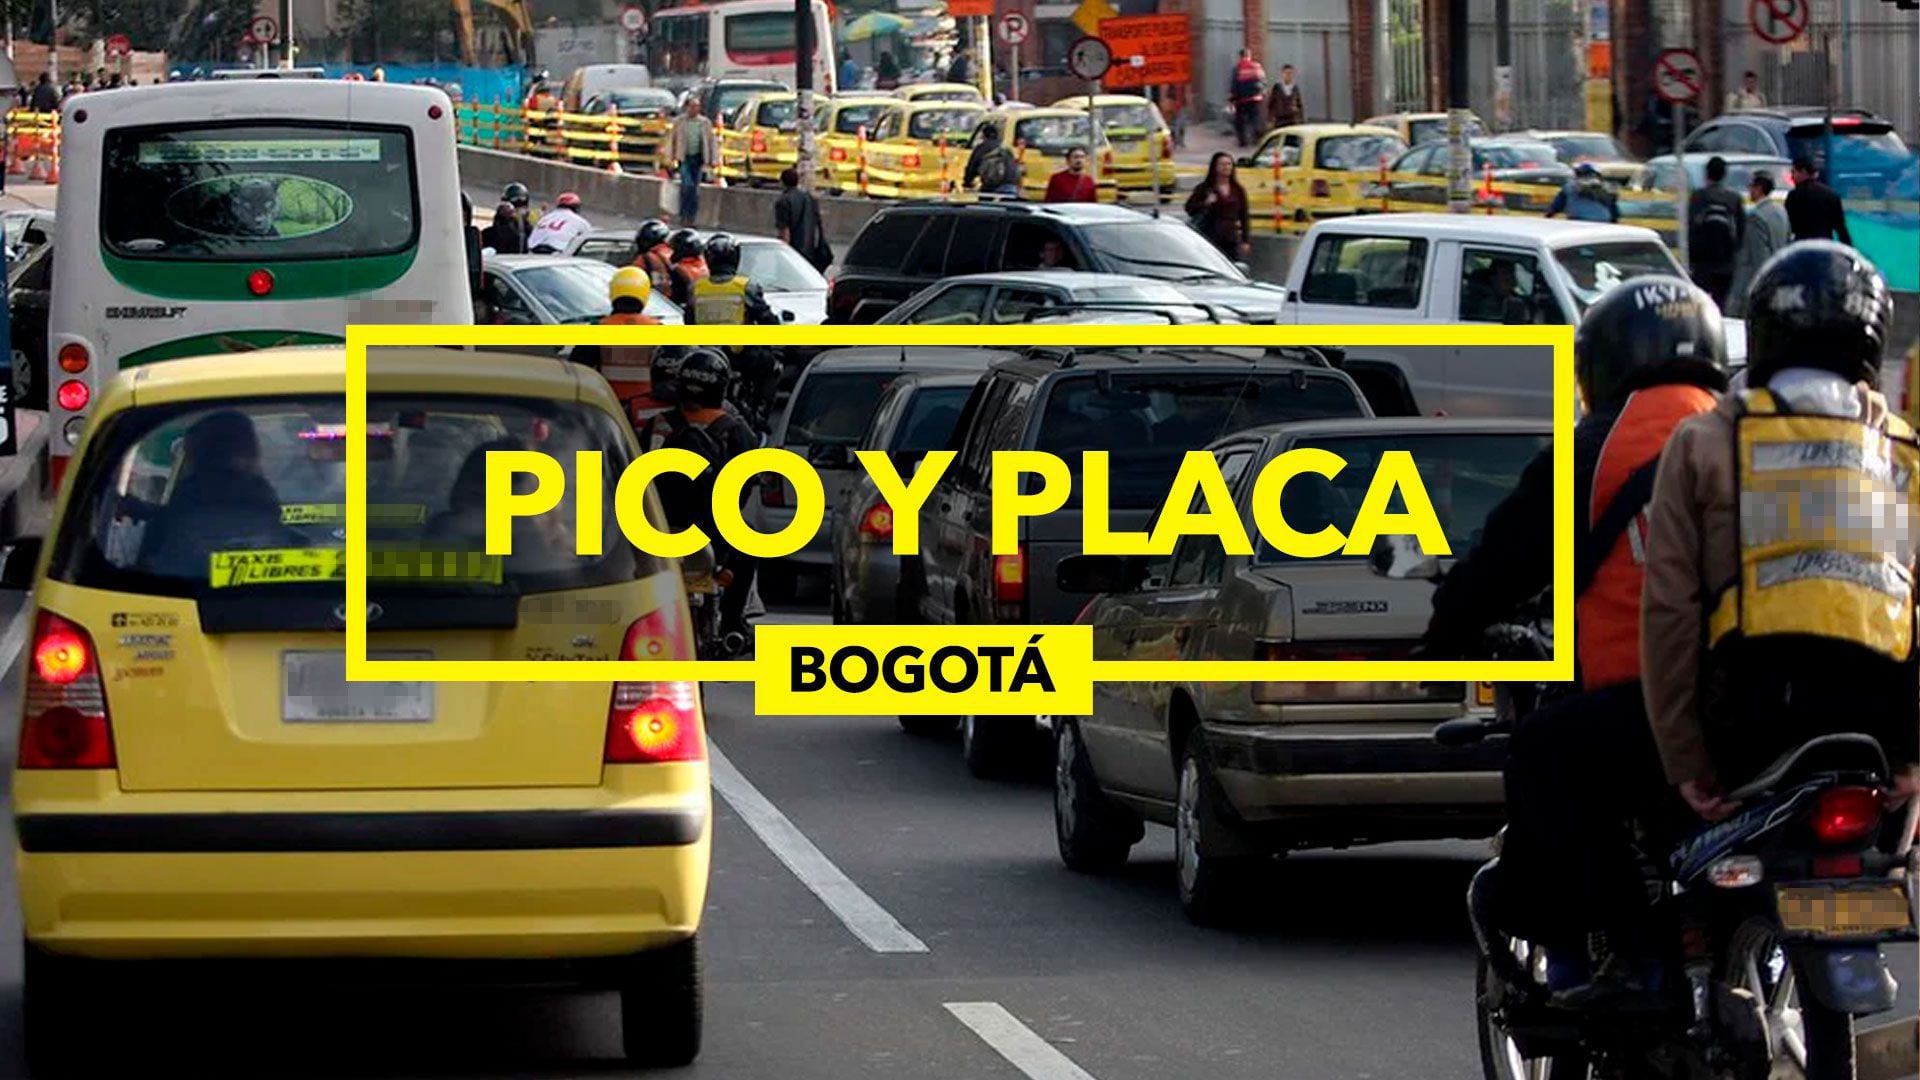 El Pico y Placa lleva más de 20 años activo en Bogotá (Infobae/Jovani Pérez)